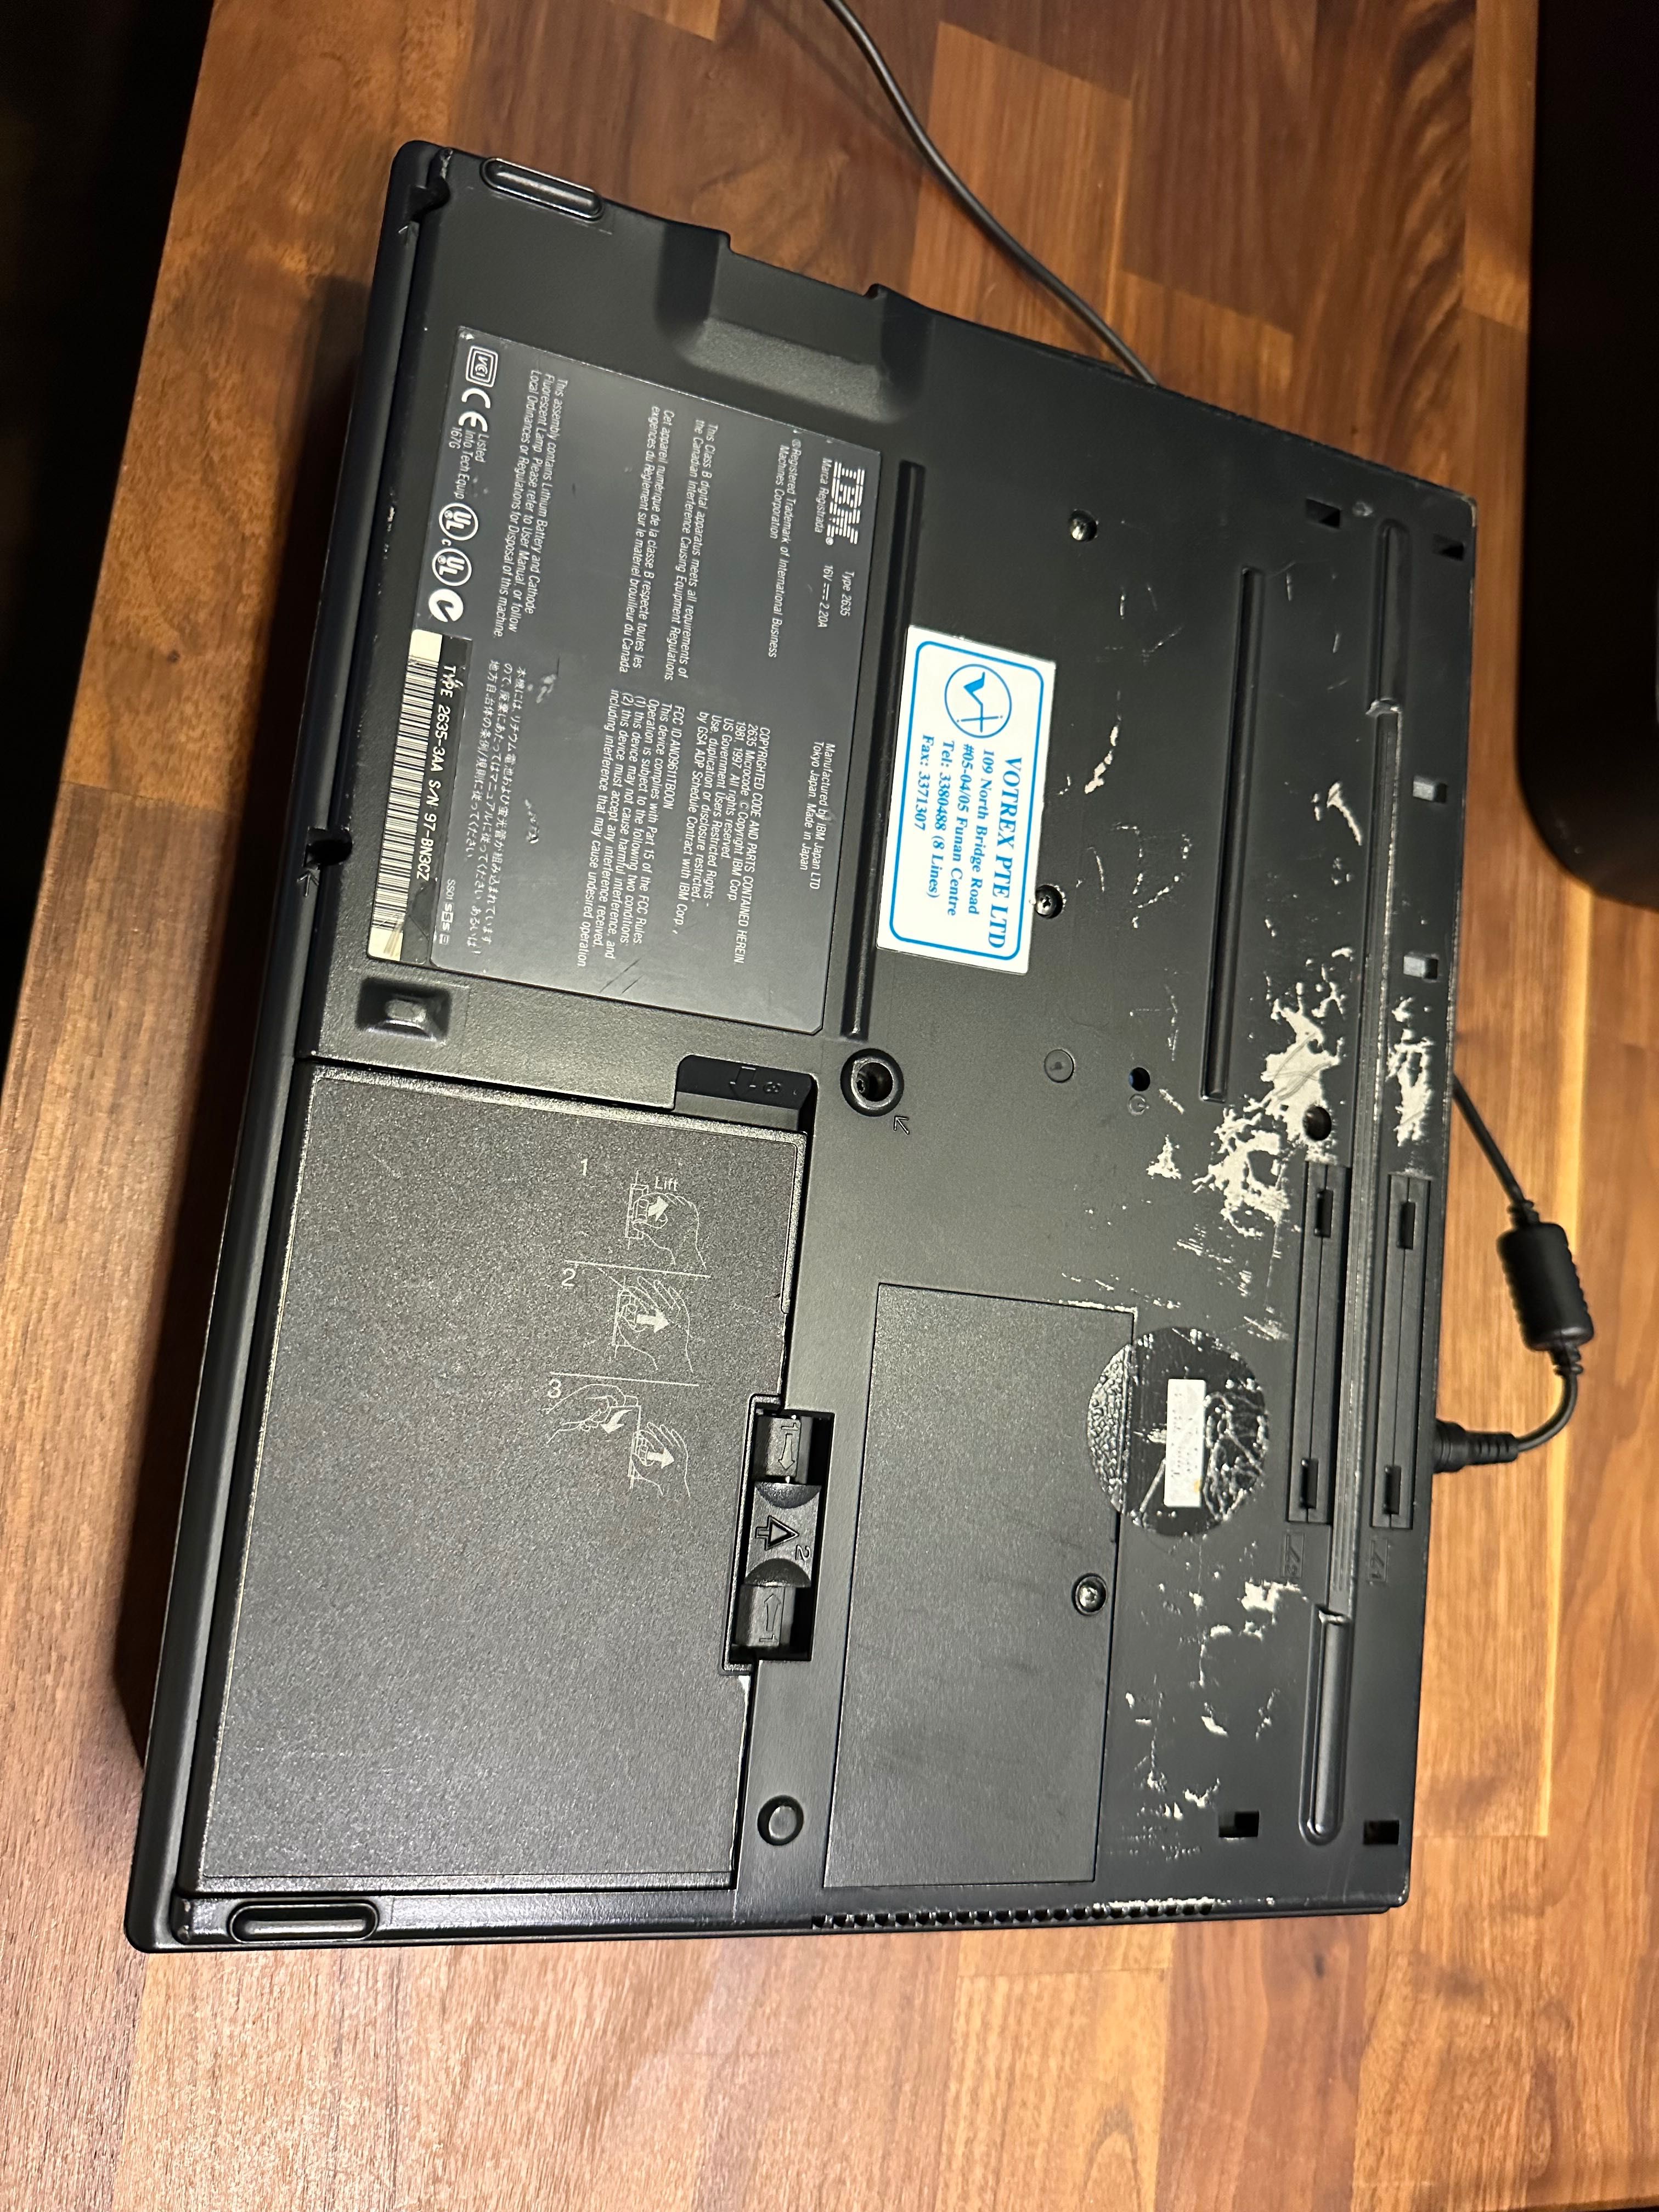 IBM ThinkPad 380d ZABYTEK z 1998 sprawny